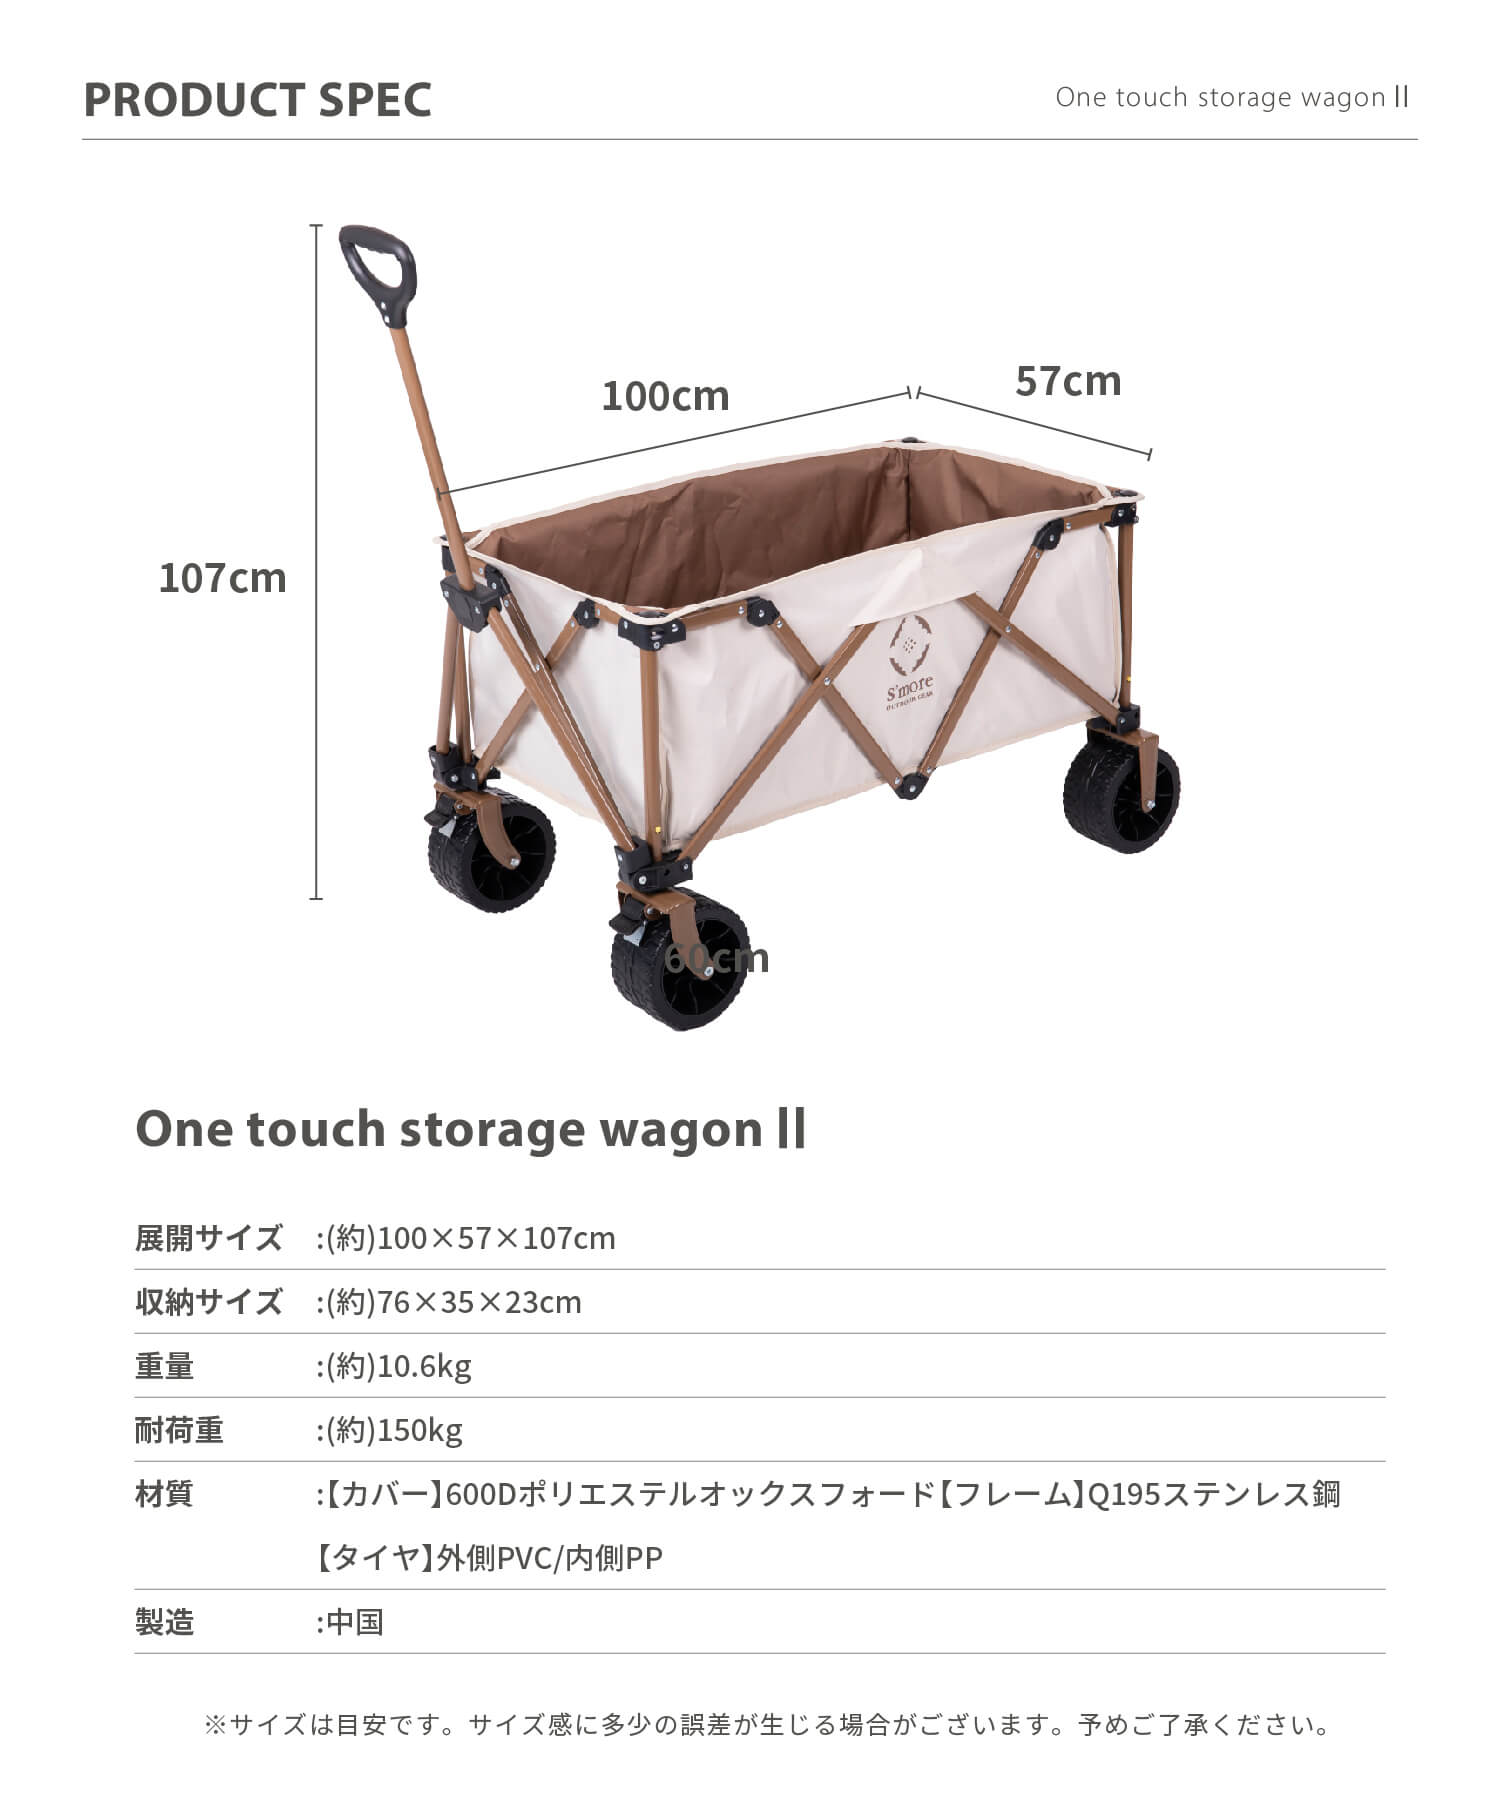 スモア 新型アウトドアワゴン One touch storage wagon II